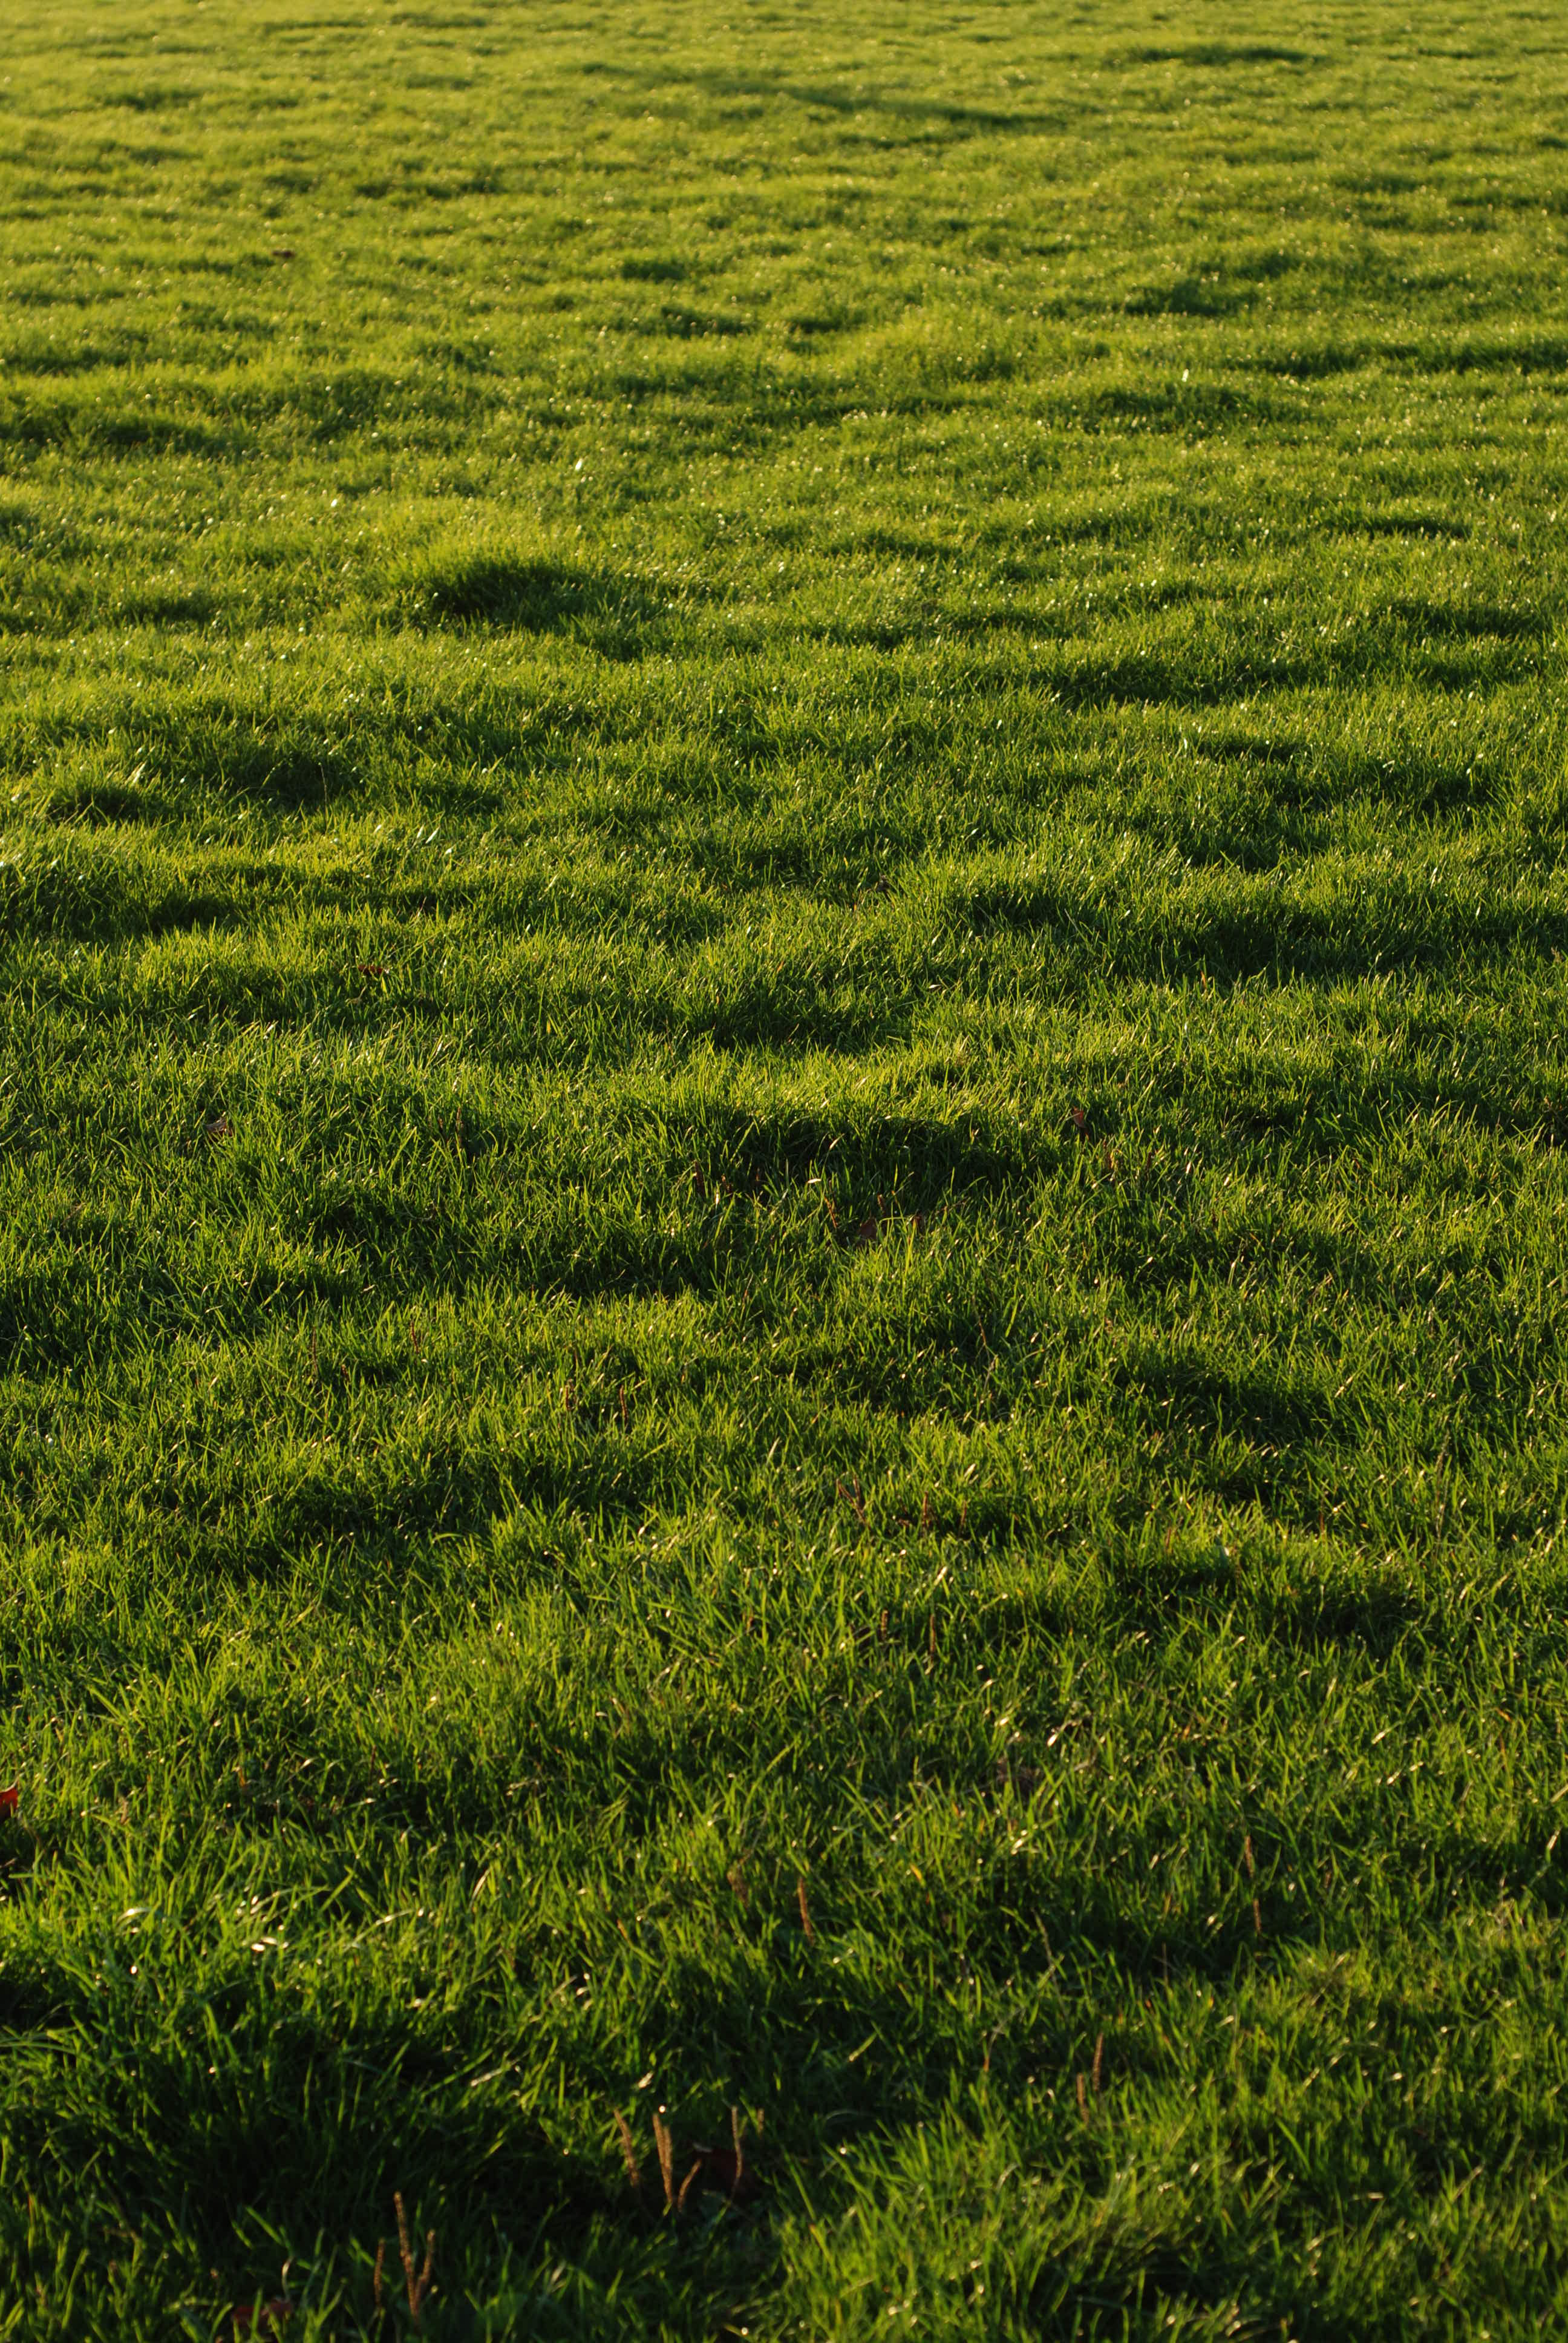 Grass || NIKON D80/50mm f/1.8@50 | 1/125s | f5.6 | ISO100 || 2007-10-13 17:43:48